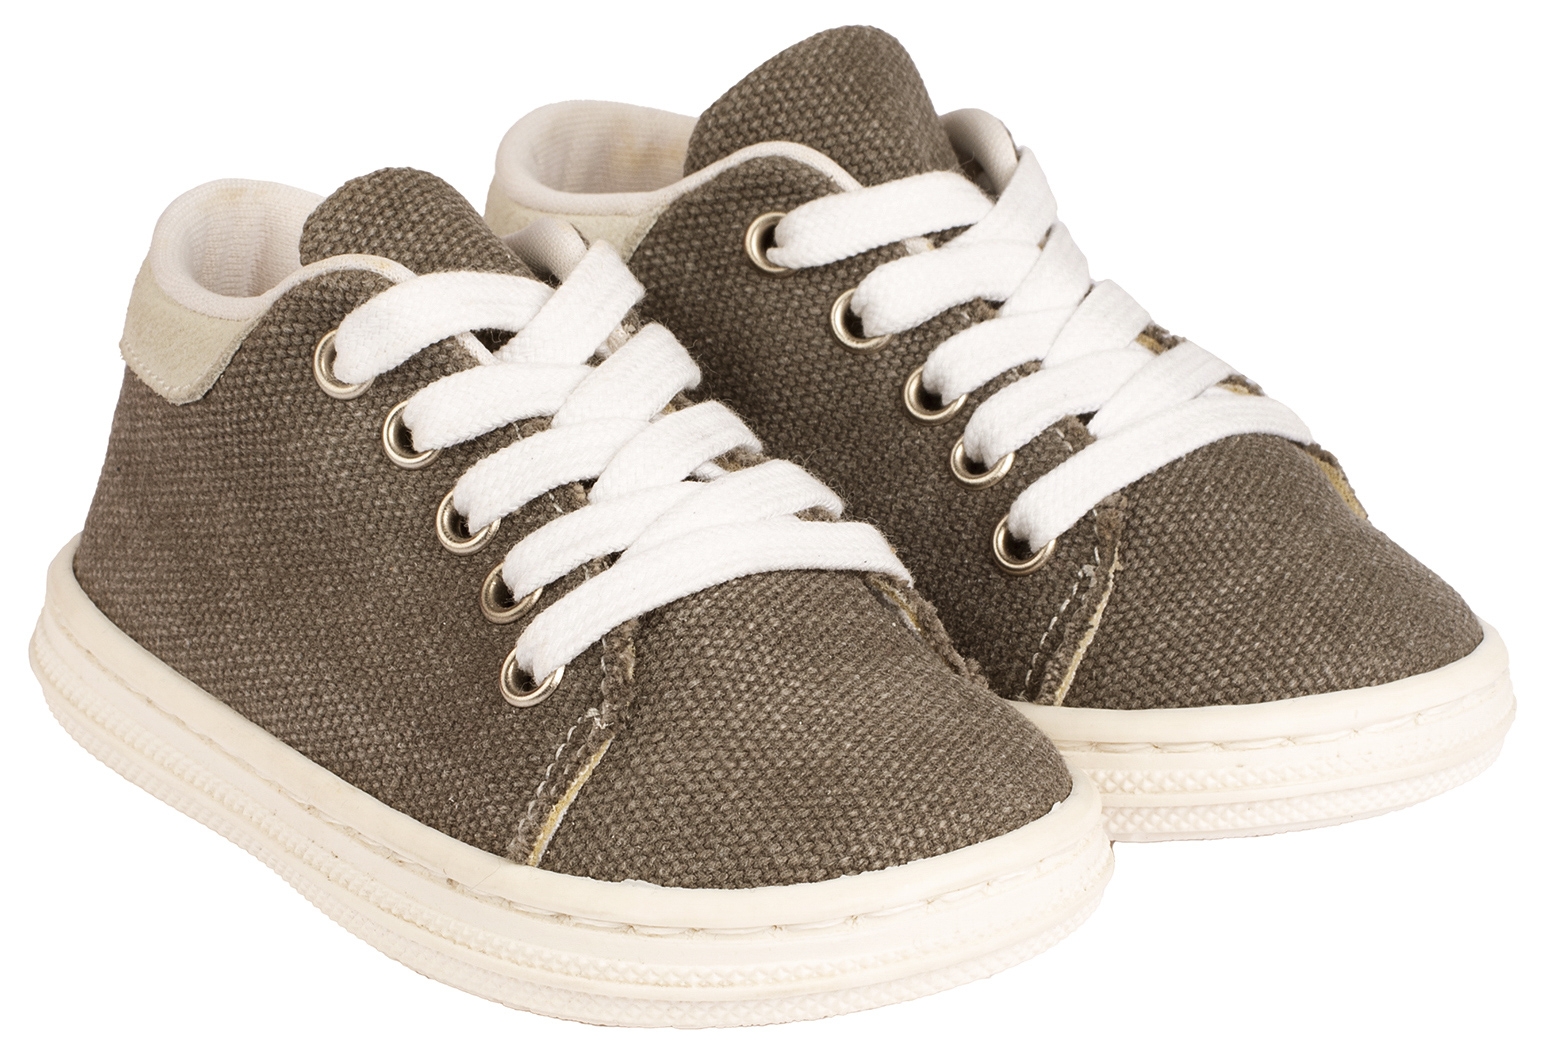 Babywalker Sneaker Canvas Γκρι - Βαπτιστικά παπούτσια για αγόρι